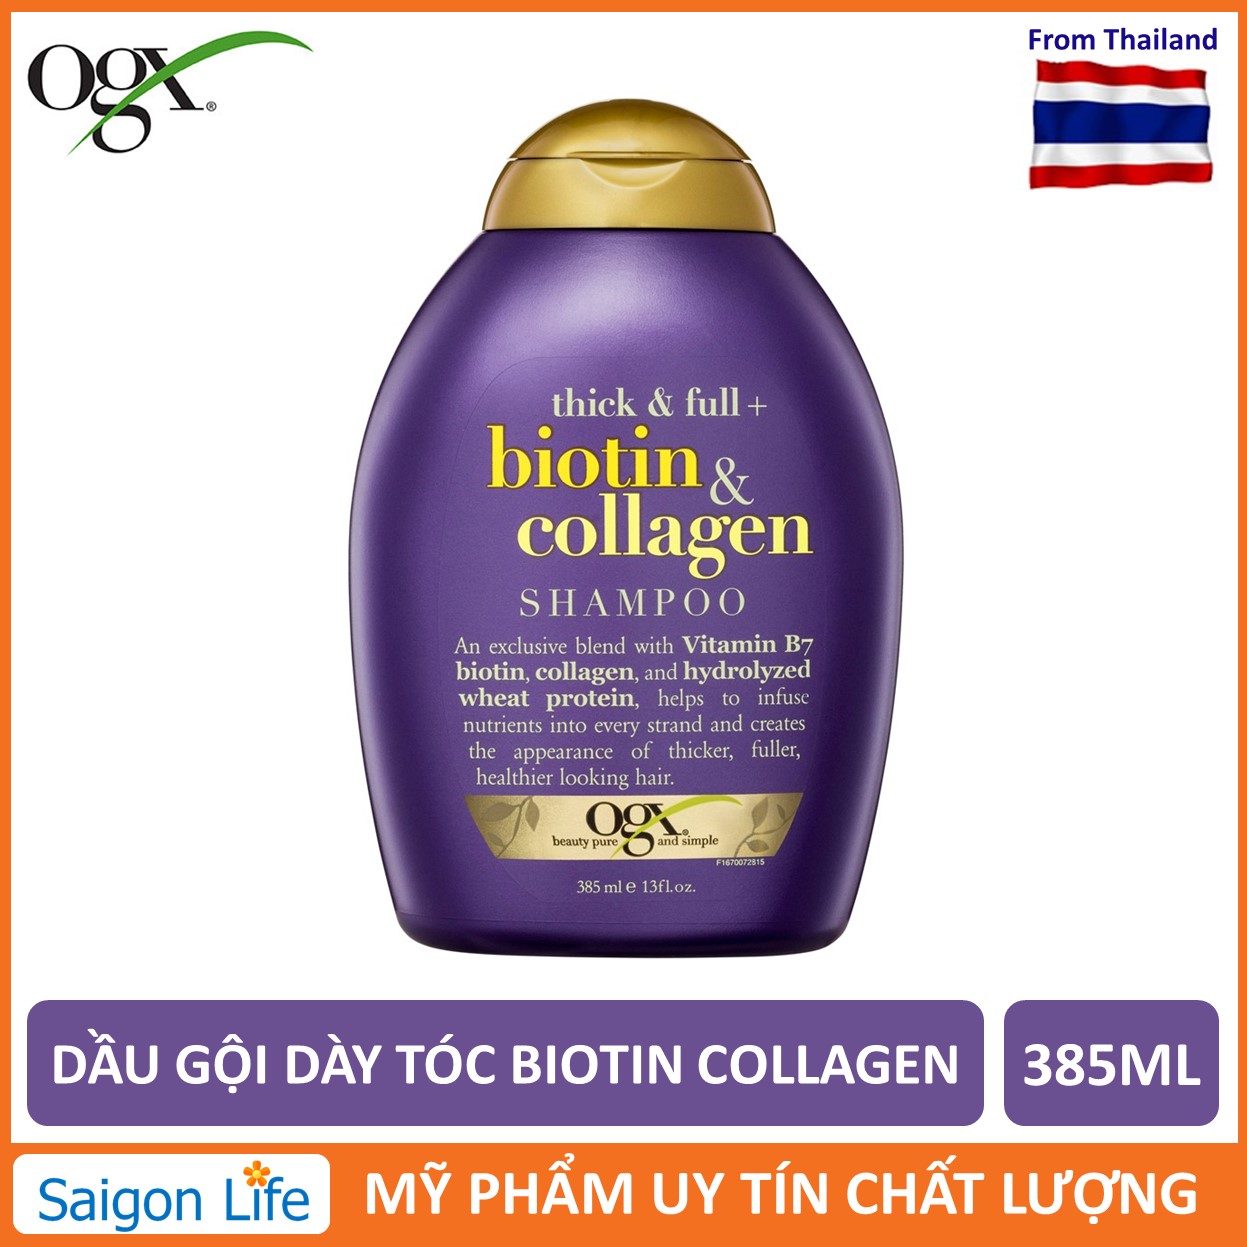 Dầu Gội Dưỡng Dày Tóc OGX Thick & Full + Biotin & Collagen Shampoo 385ml - Tím